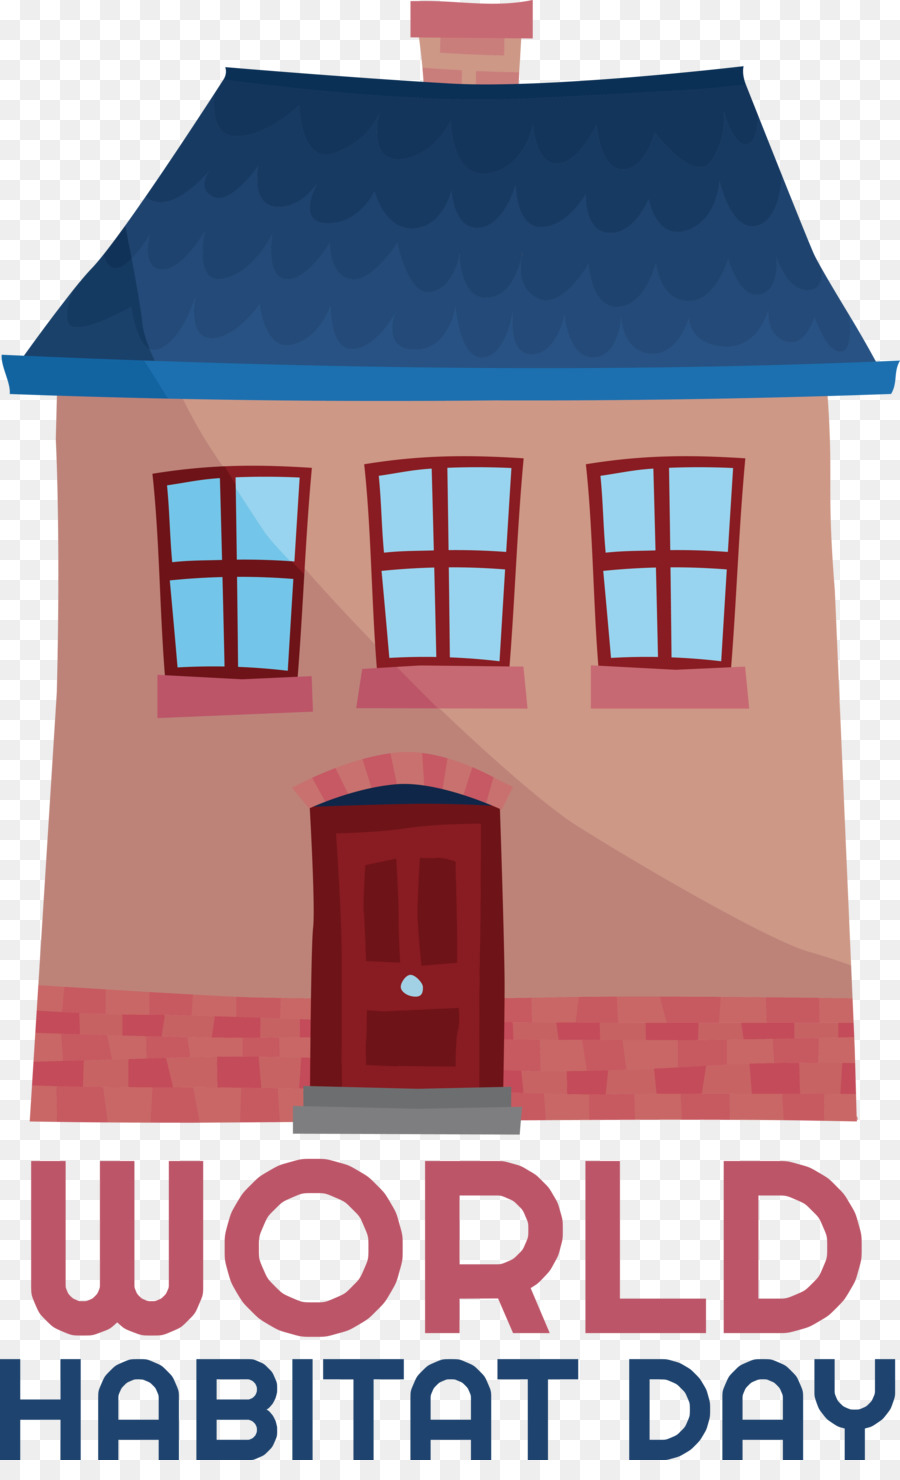 poster habitat house logo society